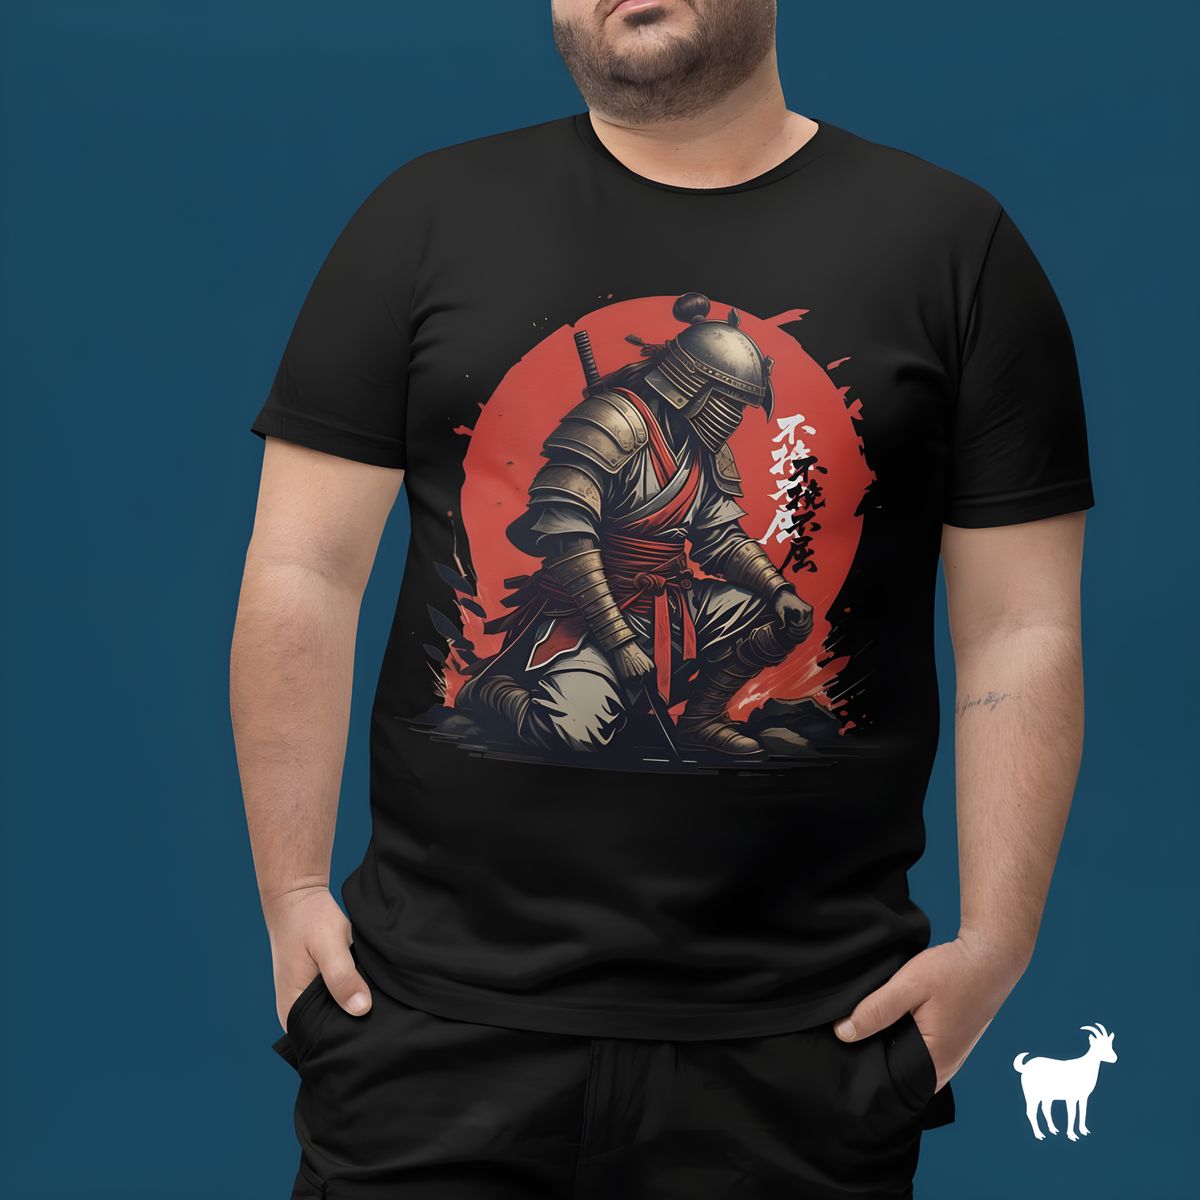 Nome do produto: Blood and Honor - T-Shirt Plus Size Samurai Redemption